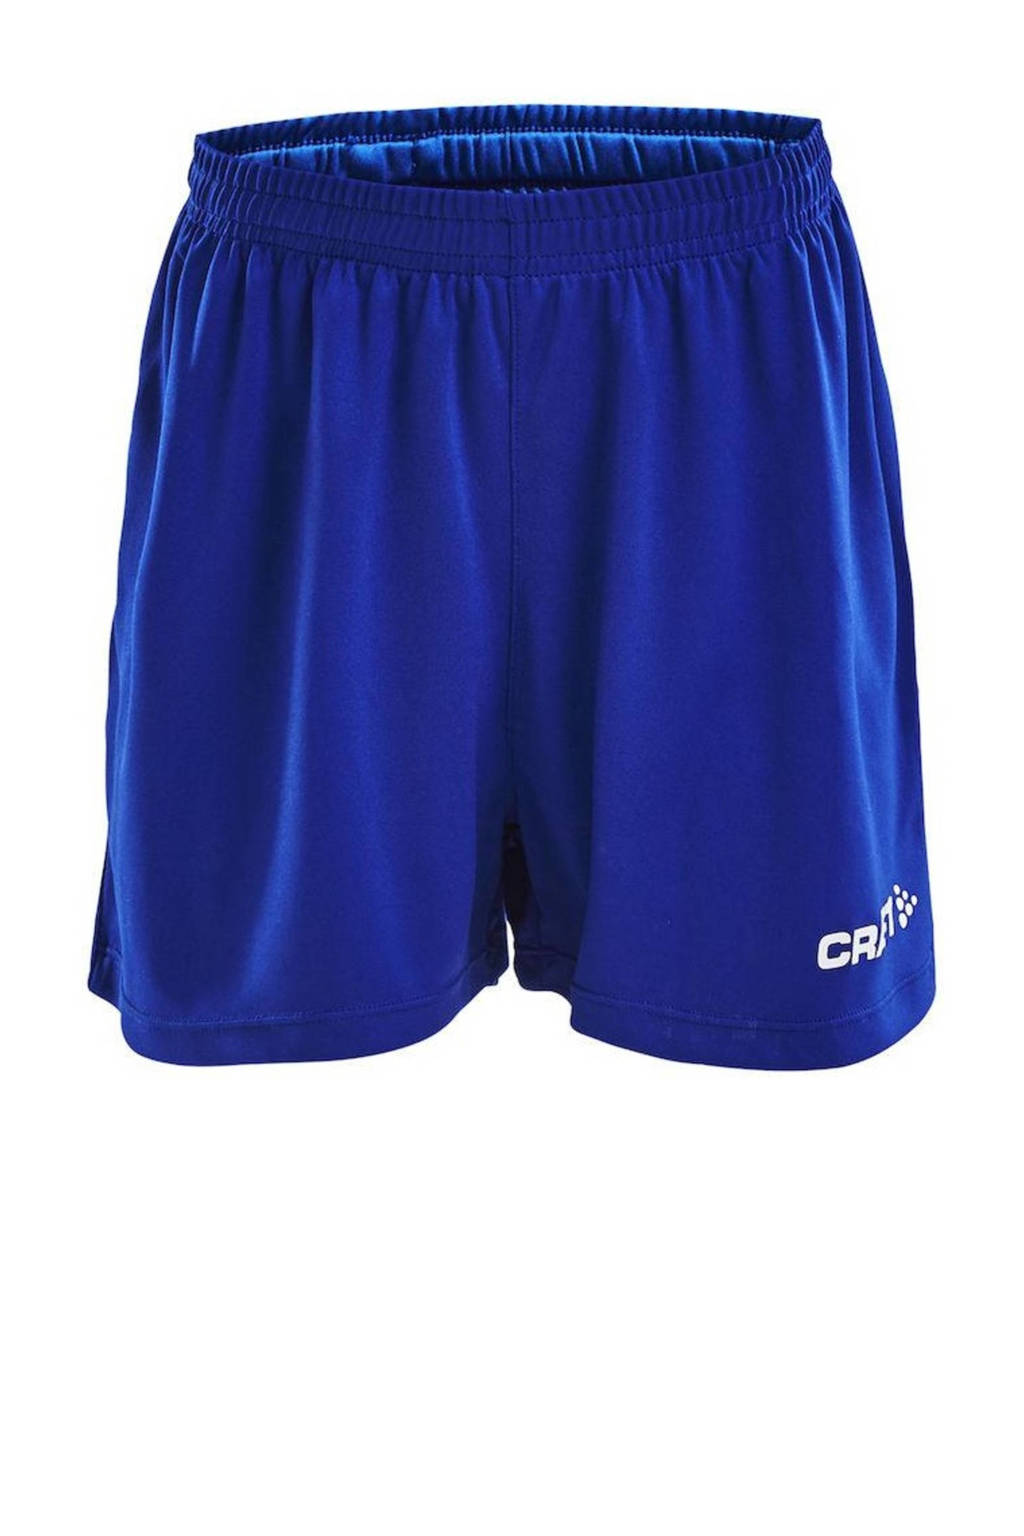 Blauwe jongens en meisjes Craft Junior sportshort Squad van polyester met regular fit en elastische tailleband